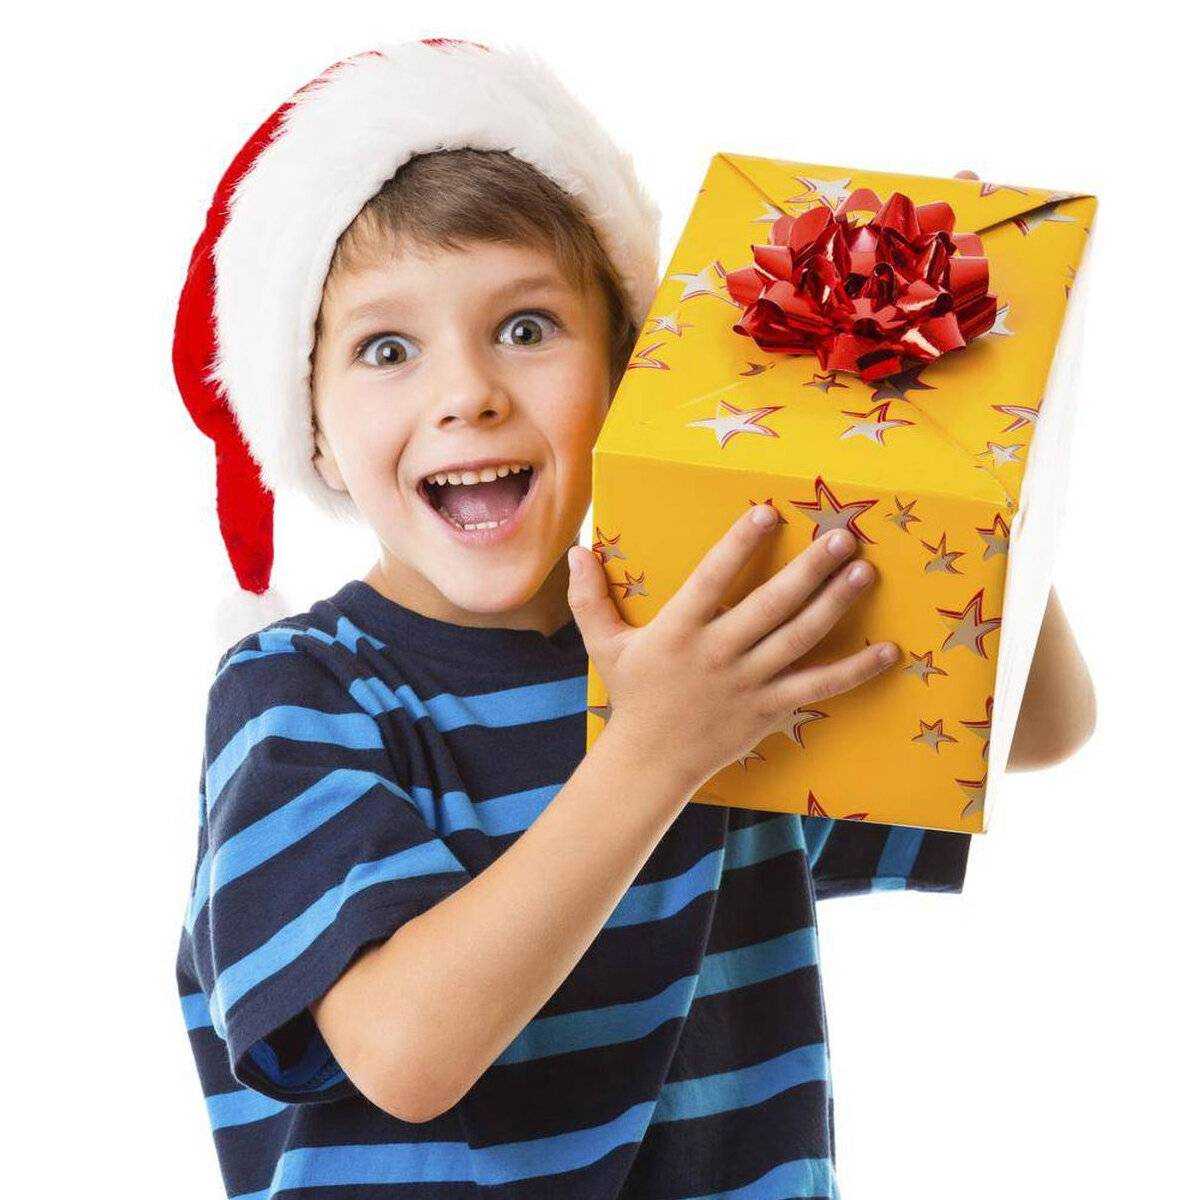 Что подарить мальчику на новый год 2021 - лучшие идеи подарков